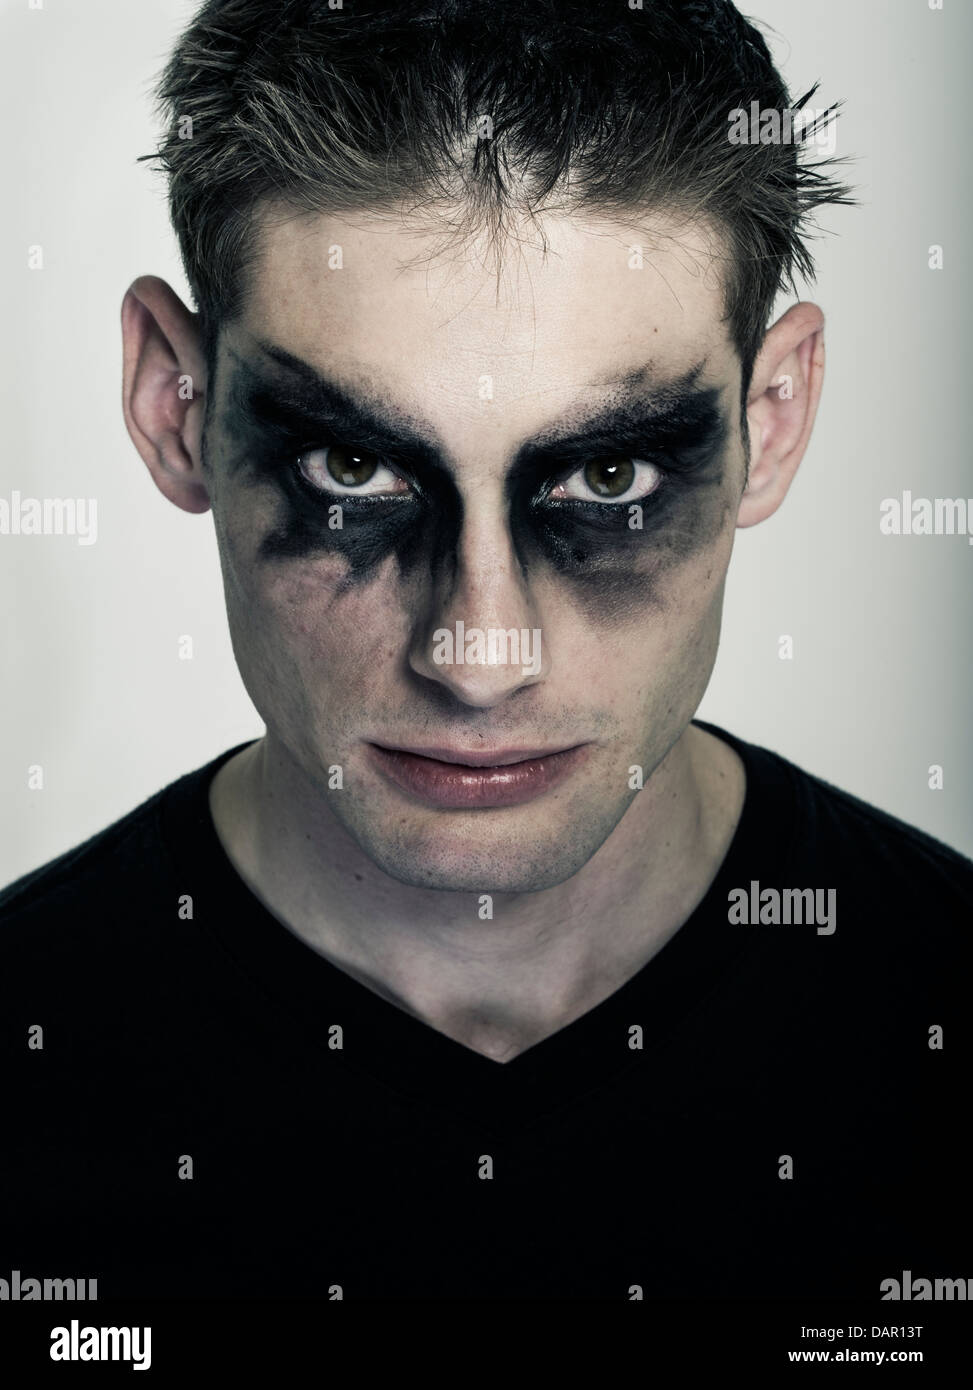 Goth masculin - homme dans un miroir, sous-culture punk goth Banque D'Images